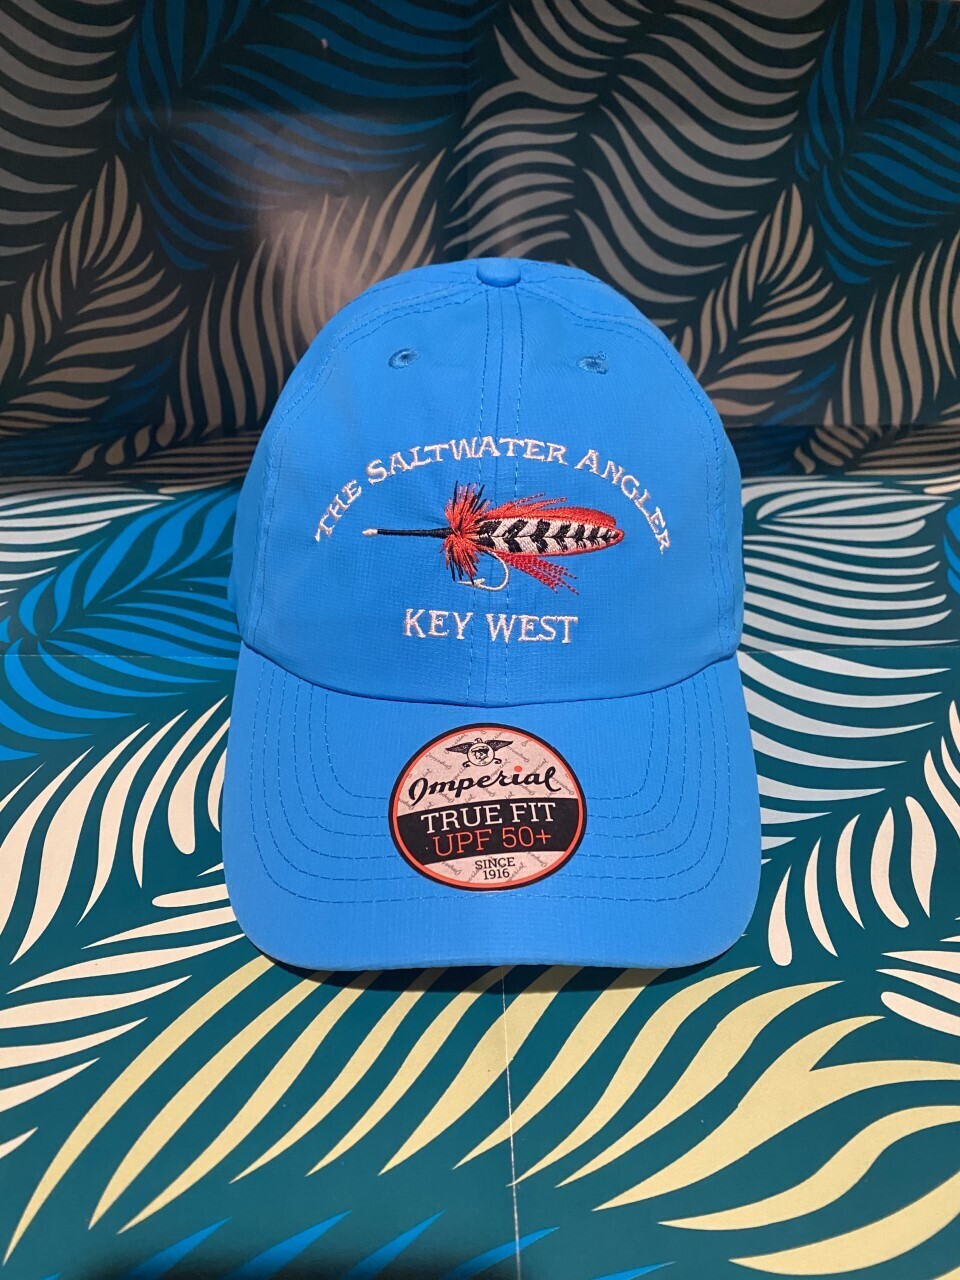 Saltwater Angler Logo Cap - Key West Fishing, Saltwater Angler Key West, Fish  key west